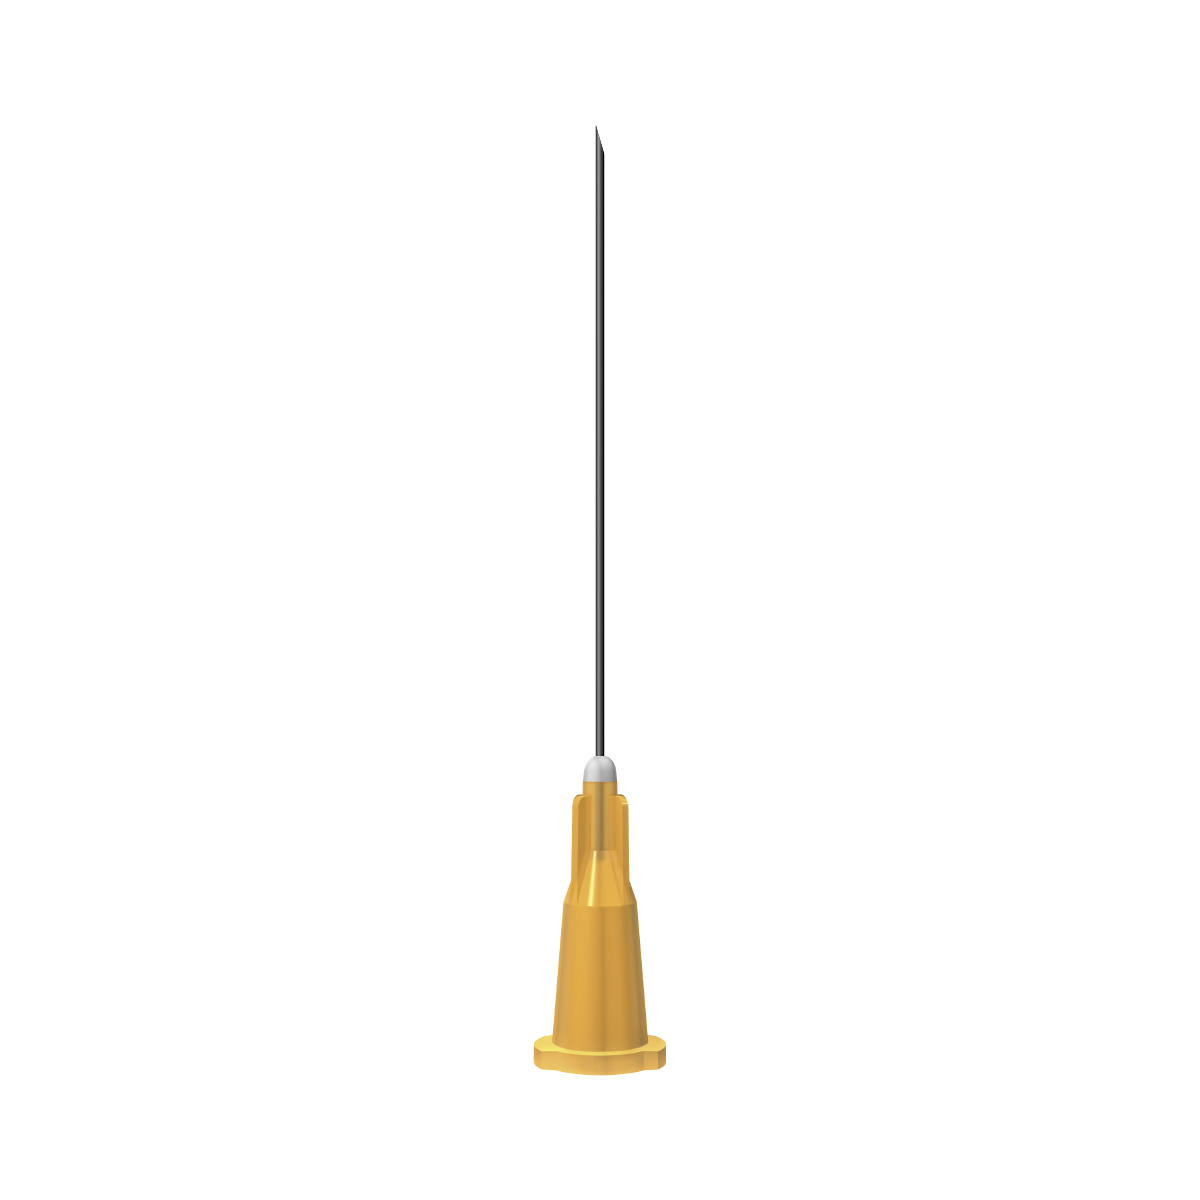 BBraun: Orange 25G 40mm (1½  inch) needle 